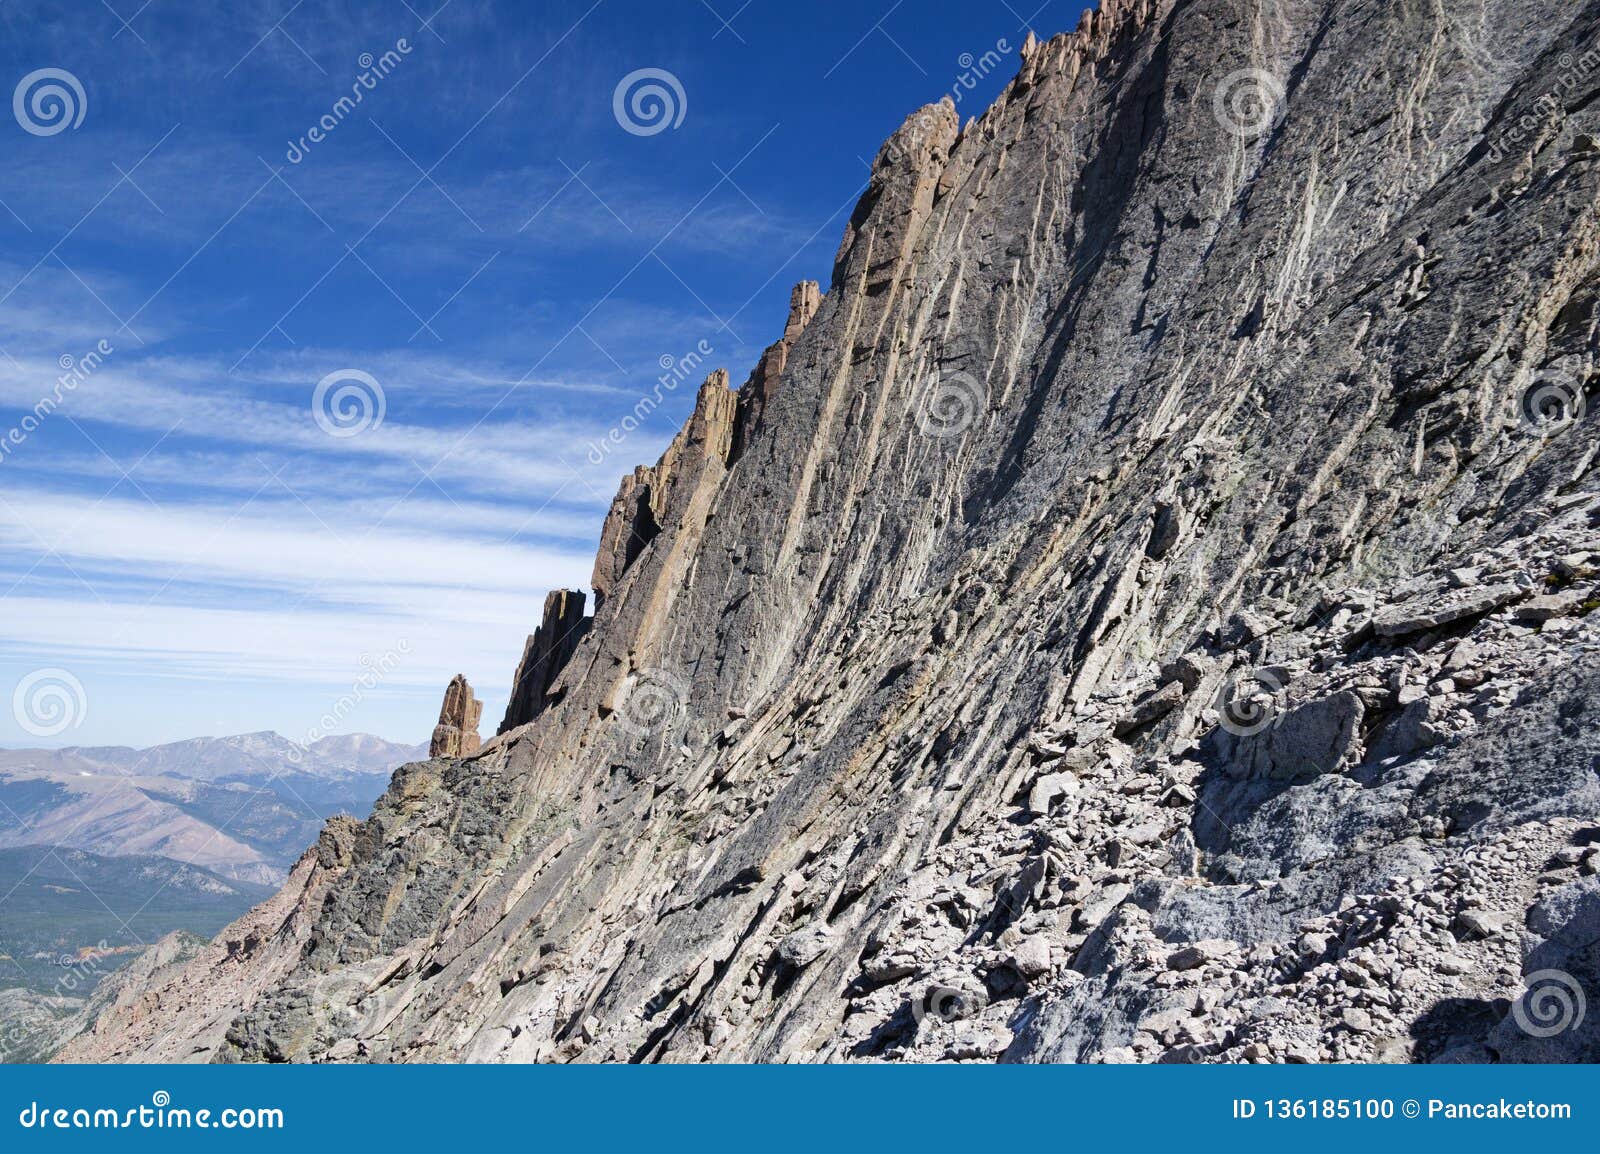 longs peak cliffs